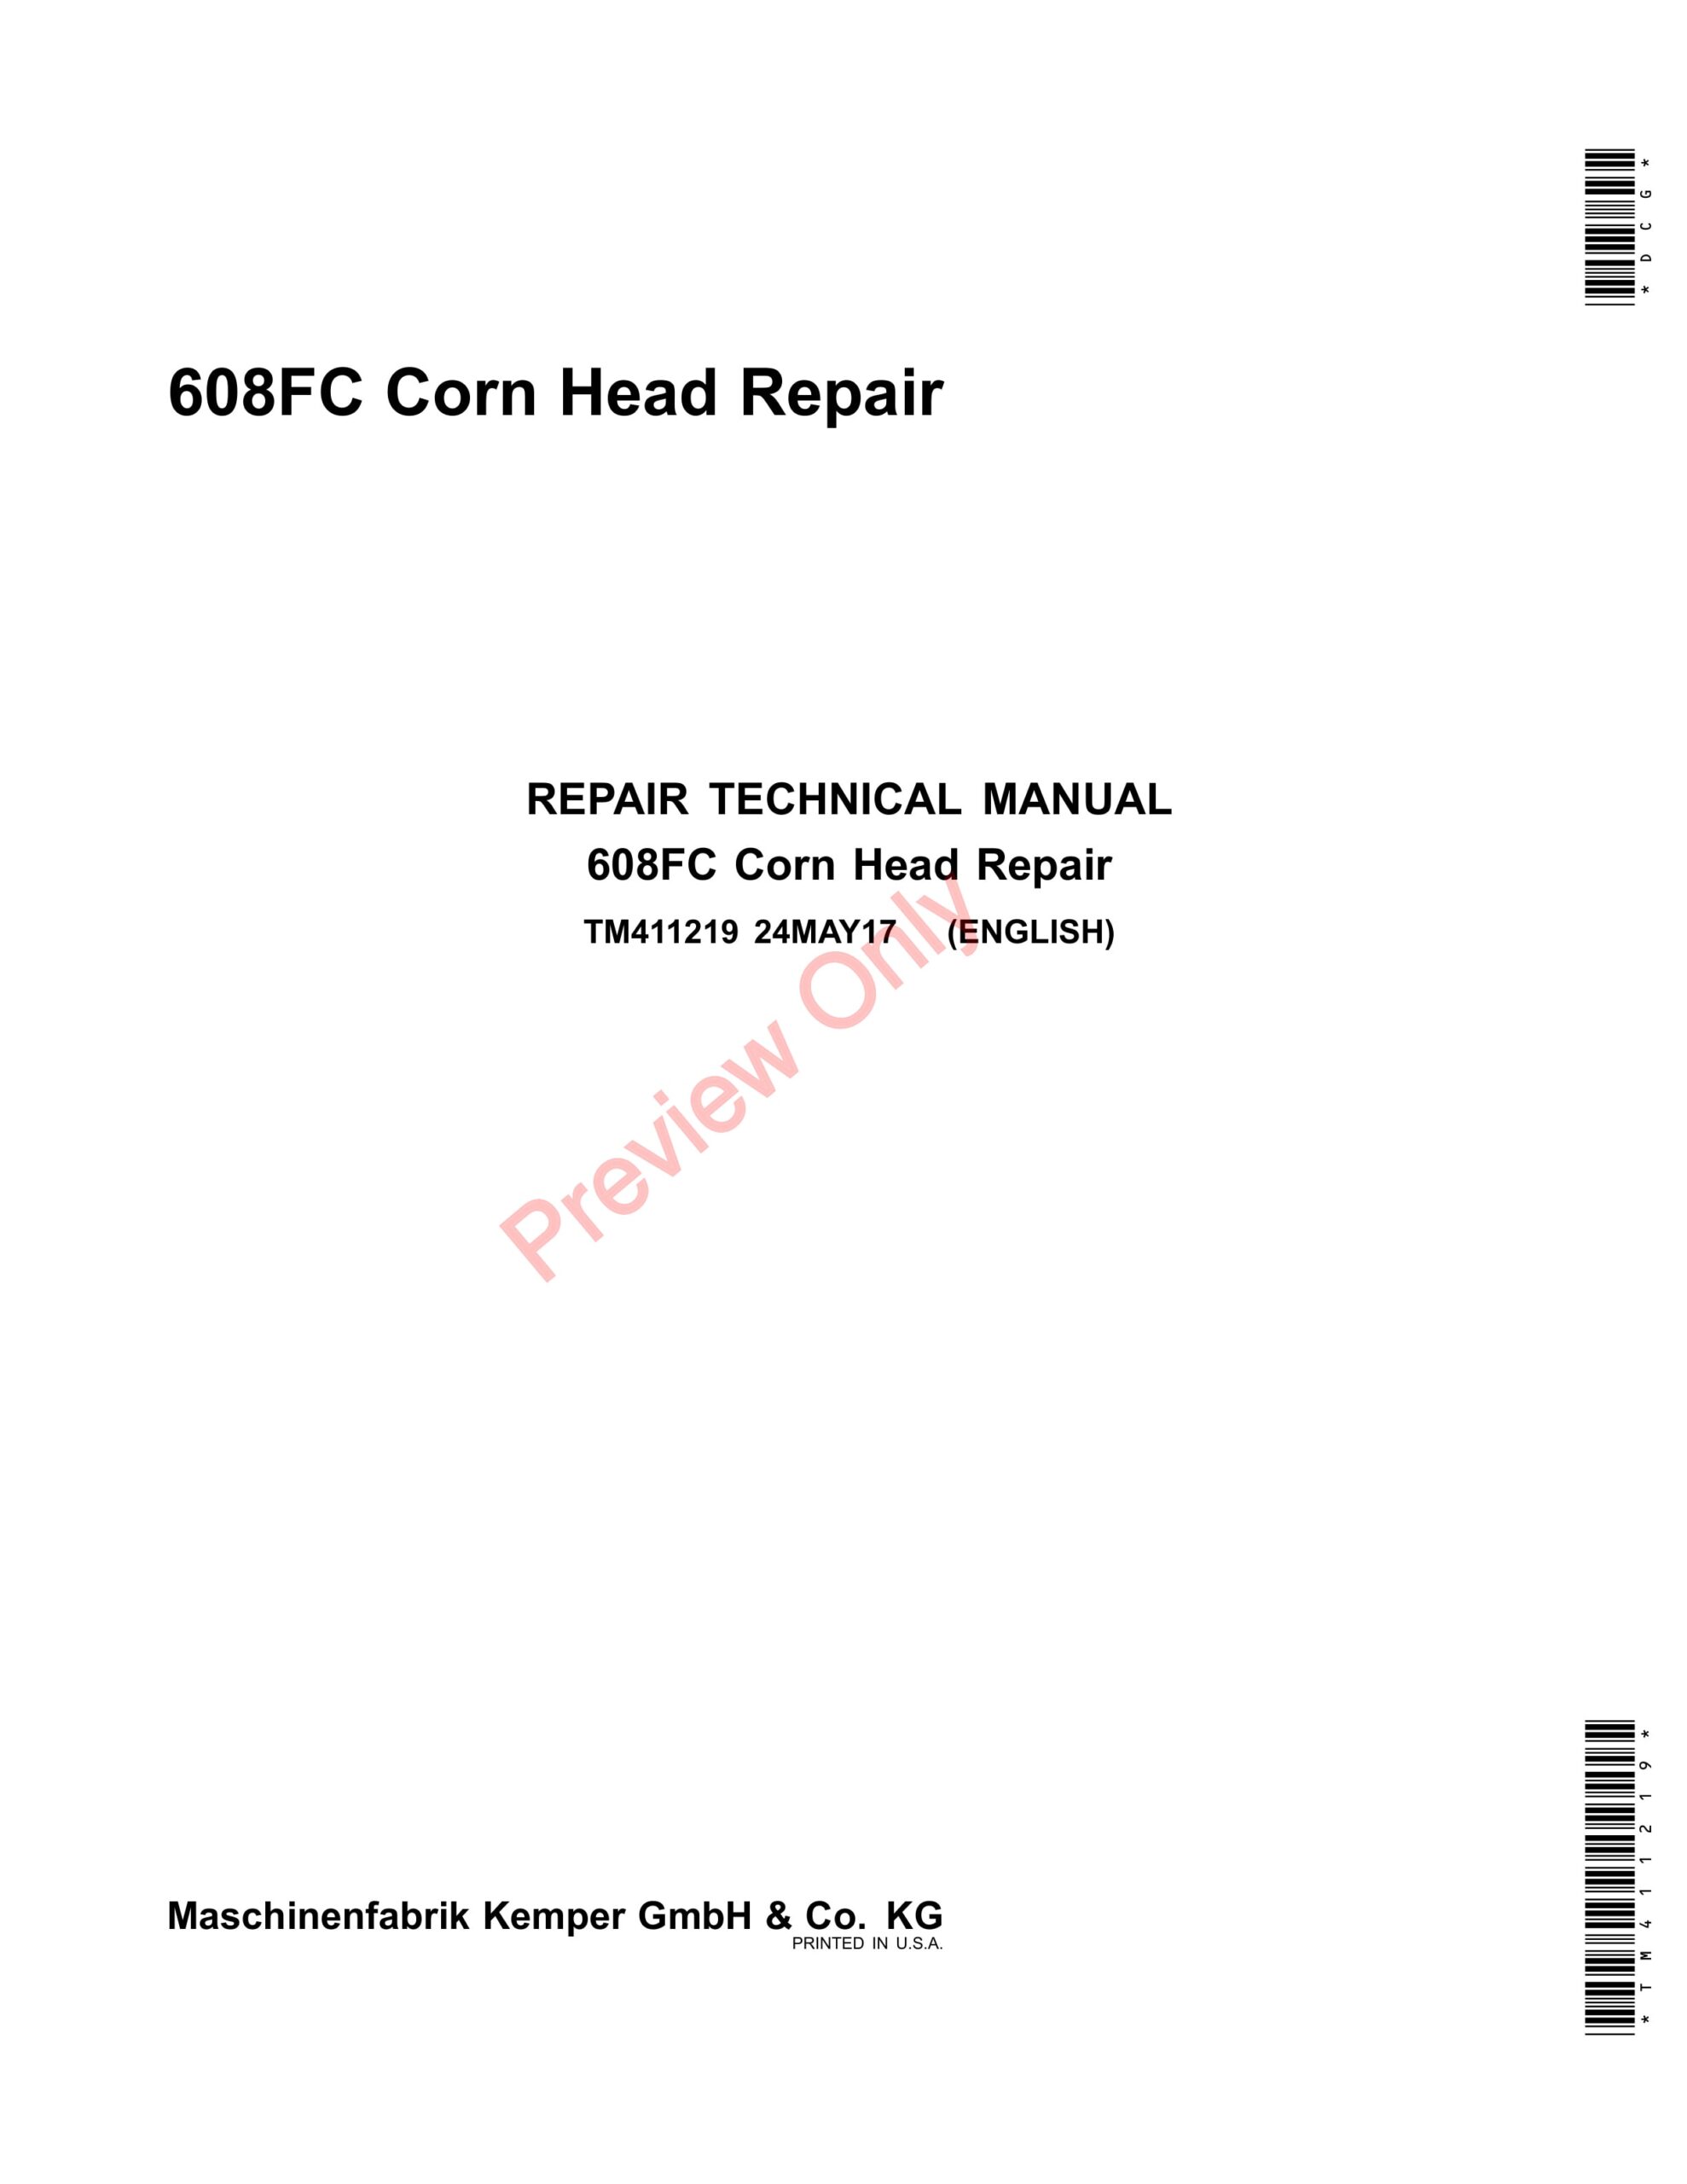 John Deere 608FC Corn Head Technical Manual TM411219 24MAY17-1